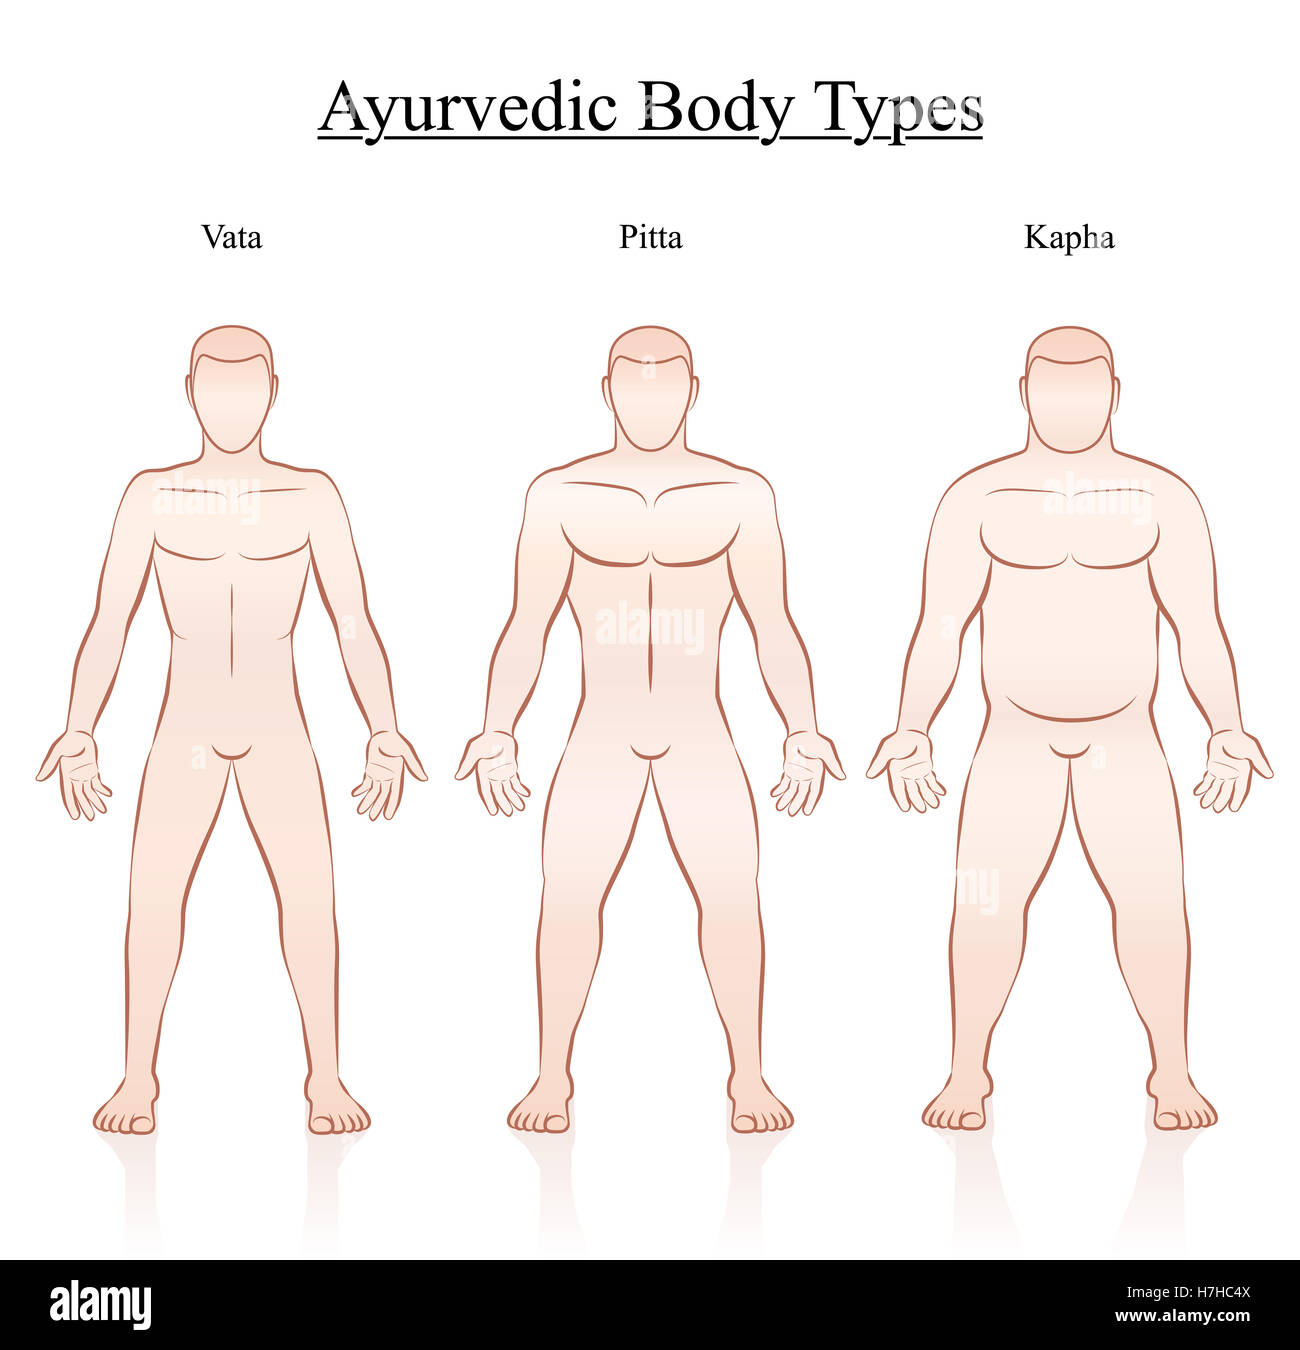 Ayurvedische Verfassung Körpertypen - Vata, Pitta und Kapha. Abbildung von drei Männern mit unterschiedlichen Anatomie zu skizzieren. Stockfoto